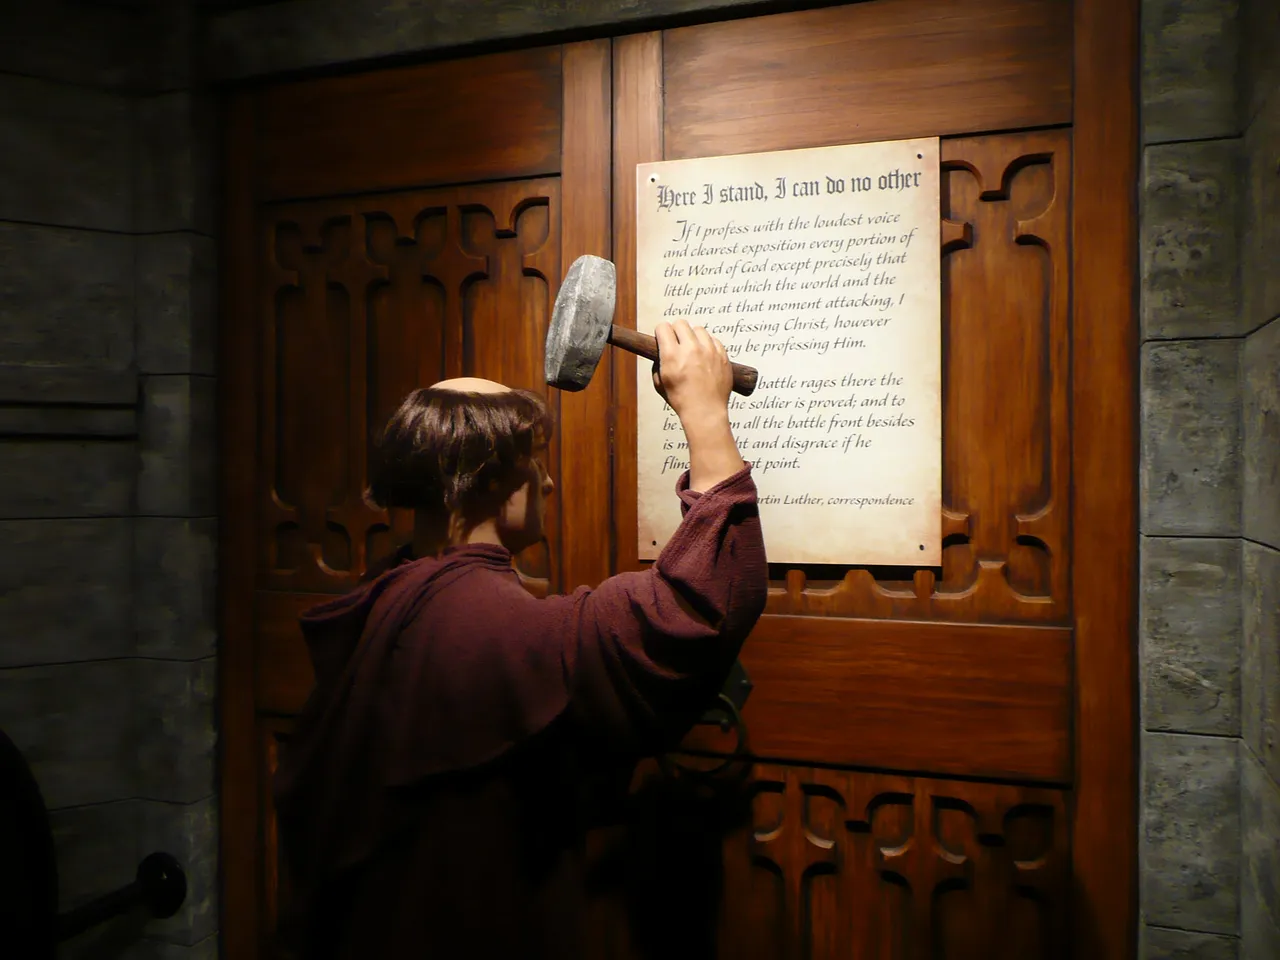 The Wittenberg Door